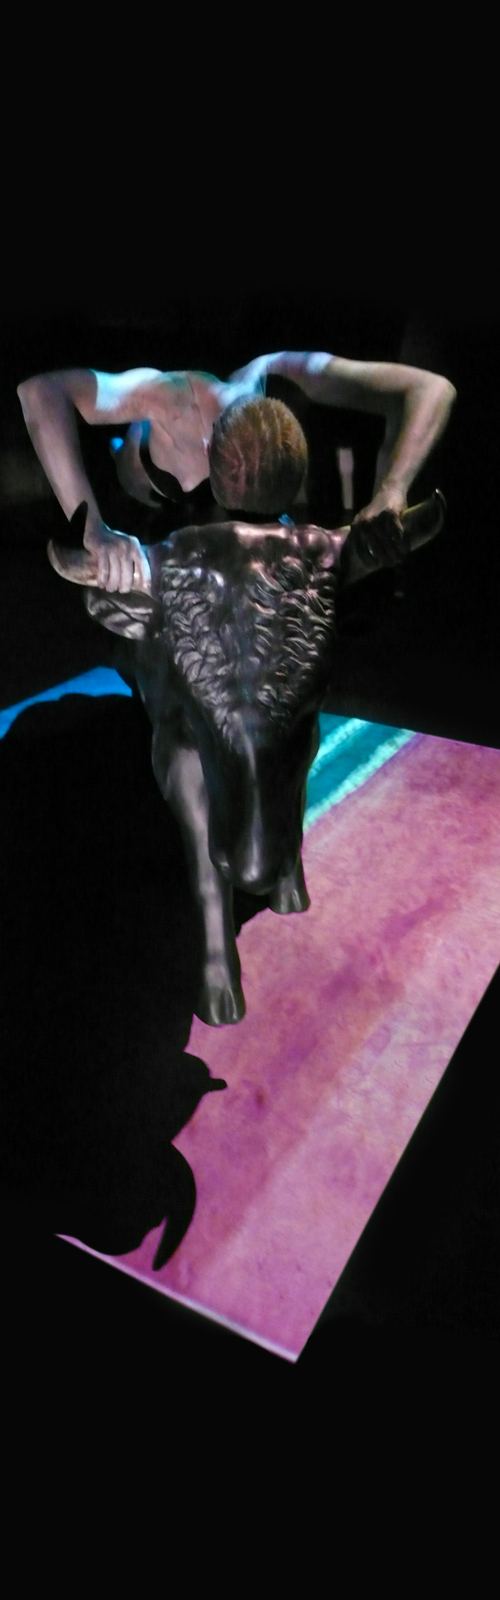 Sfondo nero, un corpo gracile cavalca la statua nera di un toro, ai suoi piedi un tappeto celeste e rosa carne.